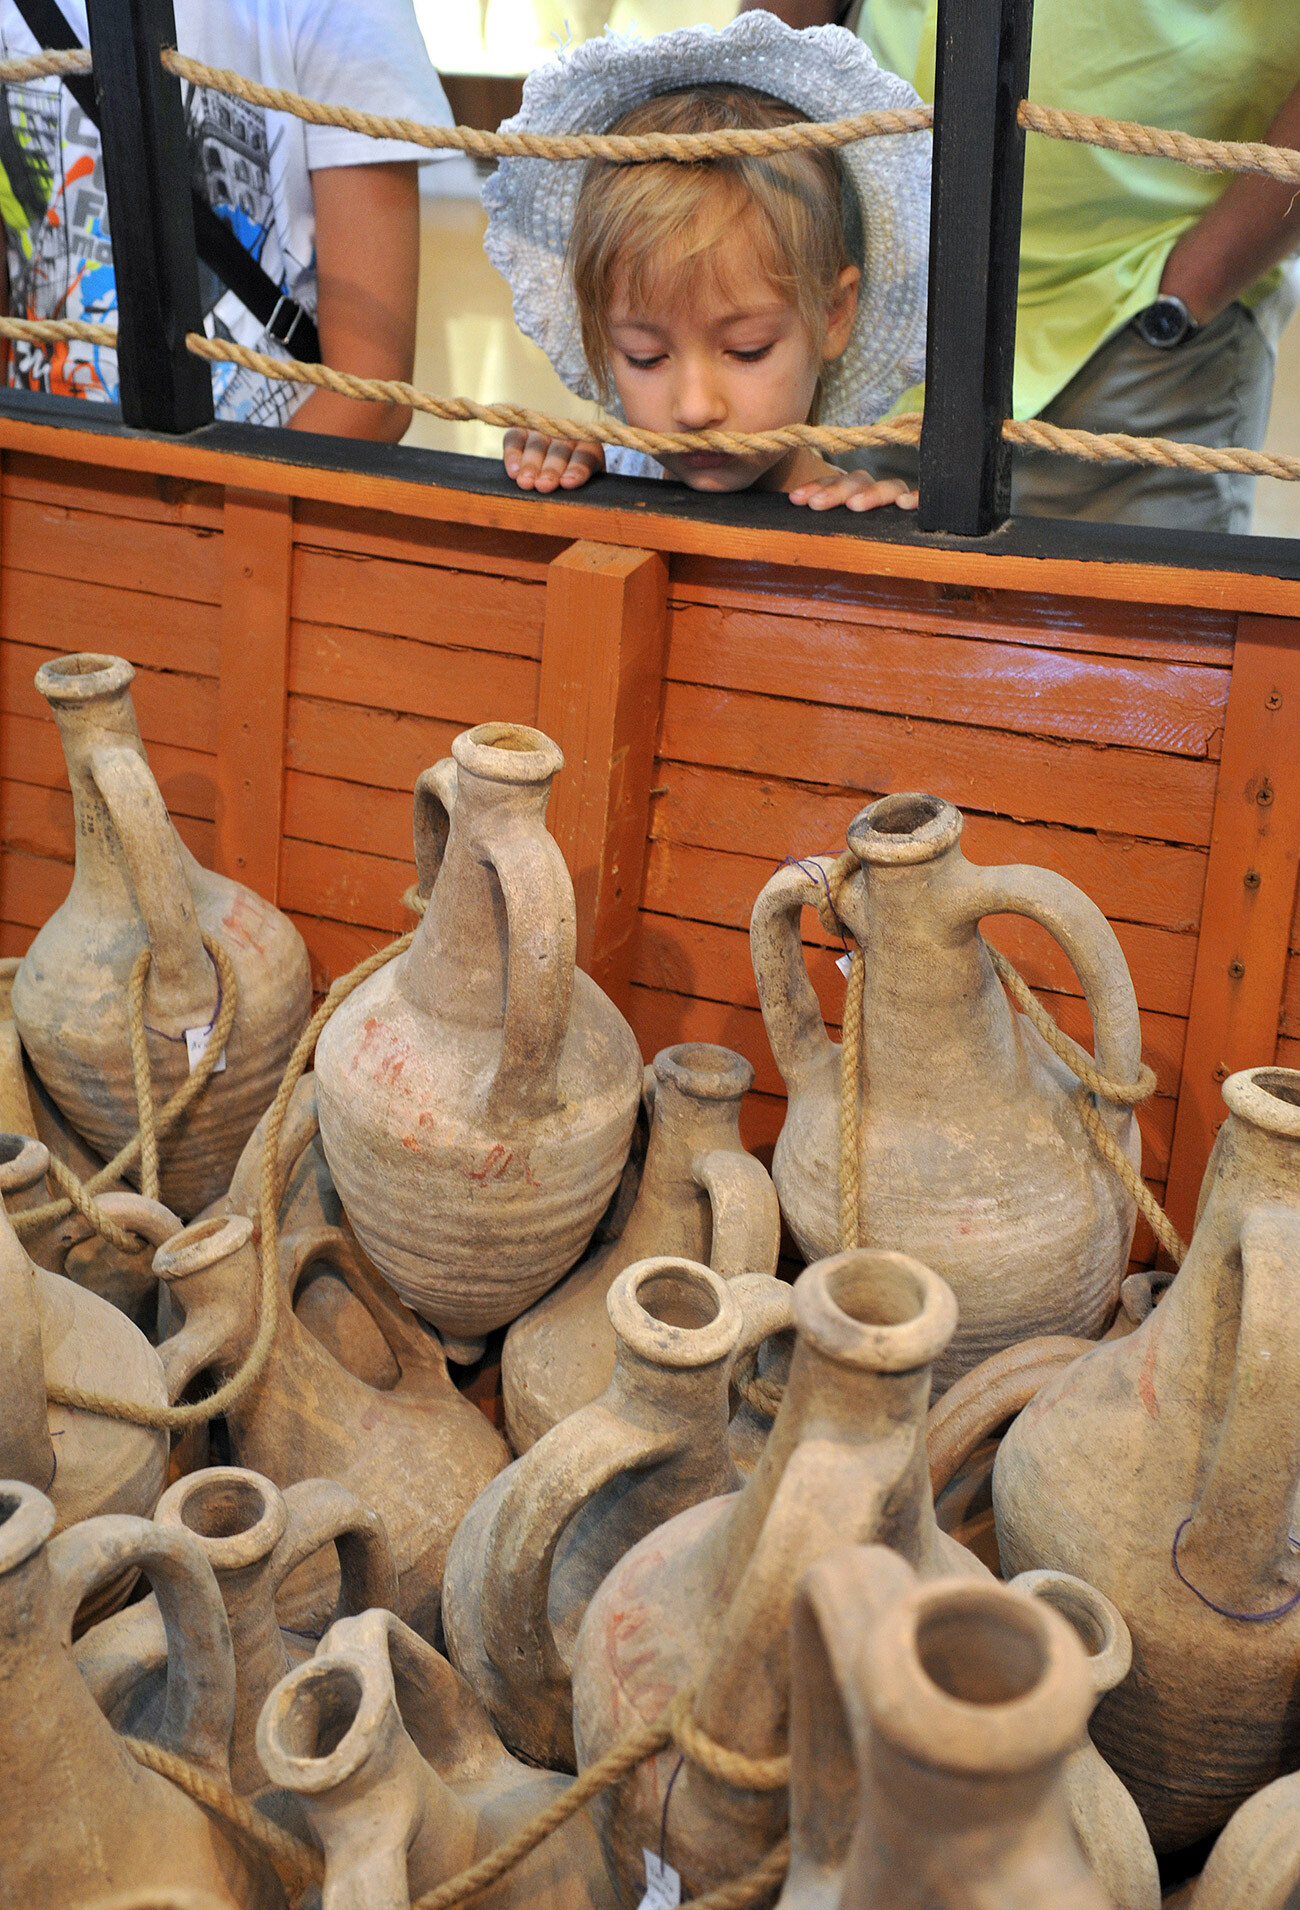 Muzej Tanaisa hrani številne glinene amfore, najdene med izkopavanji